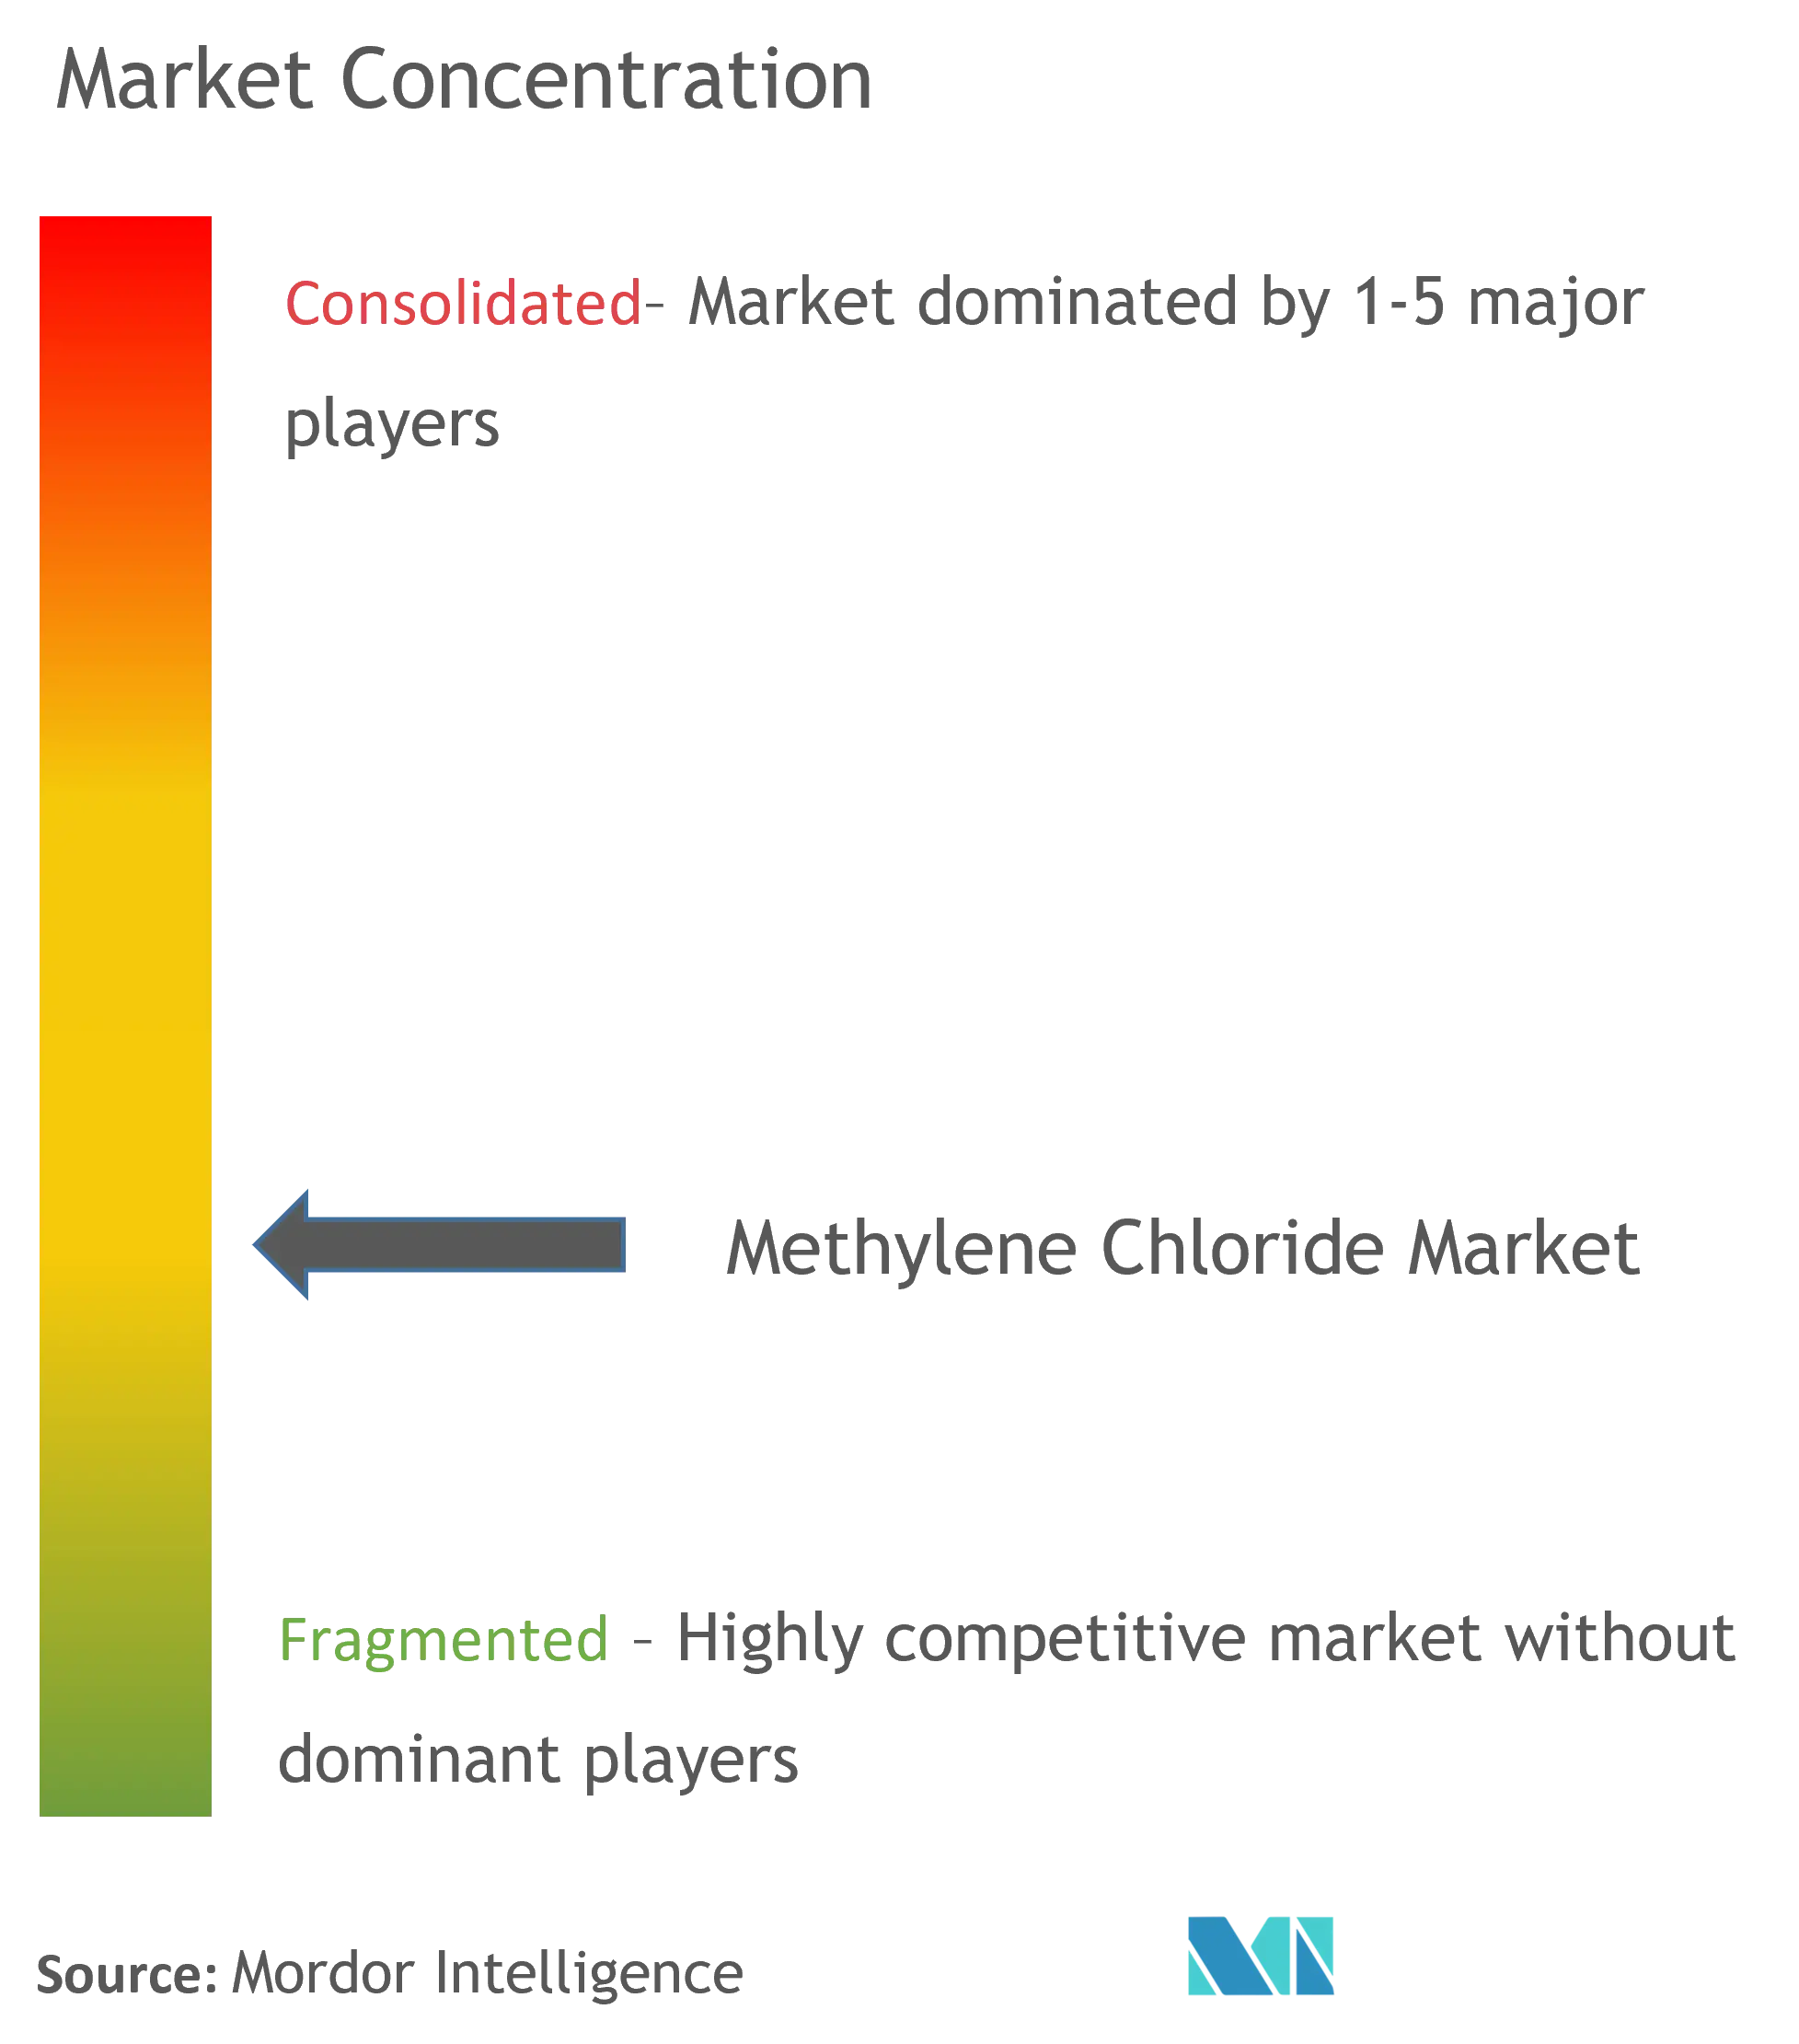 Methylene Chloride Market Concentration